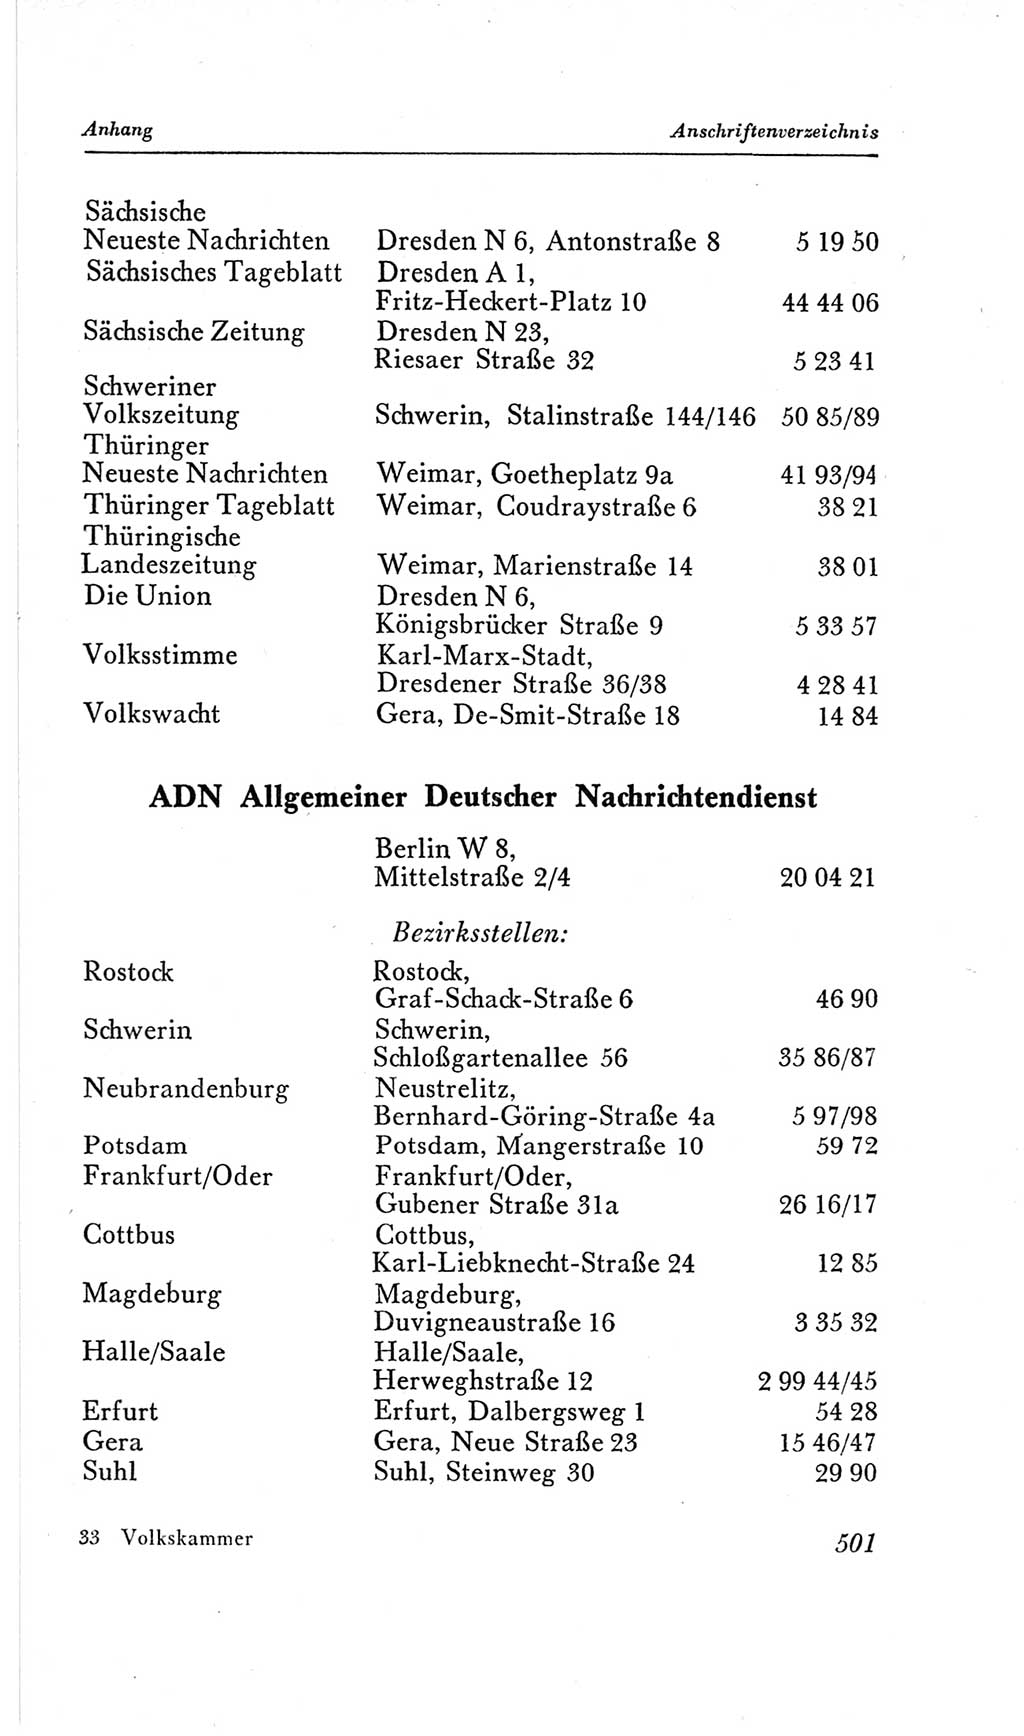 Handbuch der Volkskammer (VK) der Deutschen Demokratischen Republik (DDR), 2. Wahlperiode 1954-1958, Seite 501 (Hdb. VK. DDR, 2. WP. 1954-1958, S. 501)